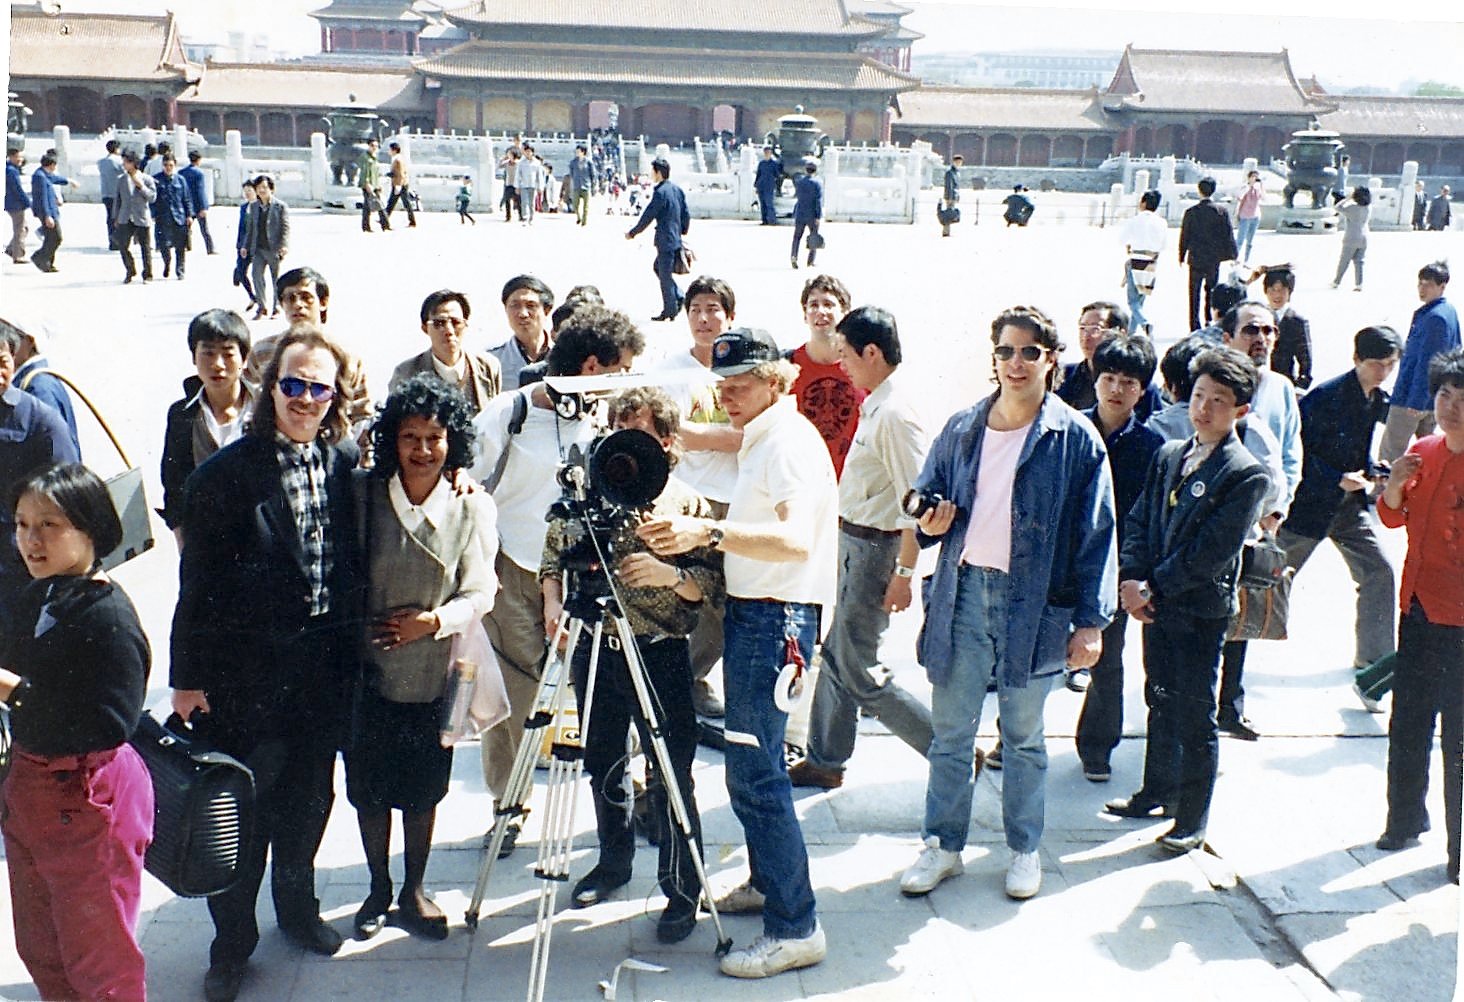  Filming in the Forbidden City, Beijing 1988 